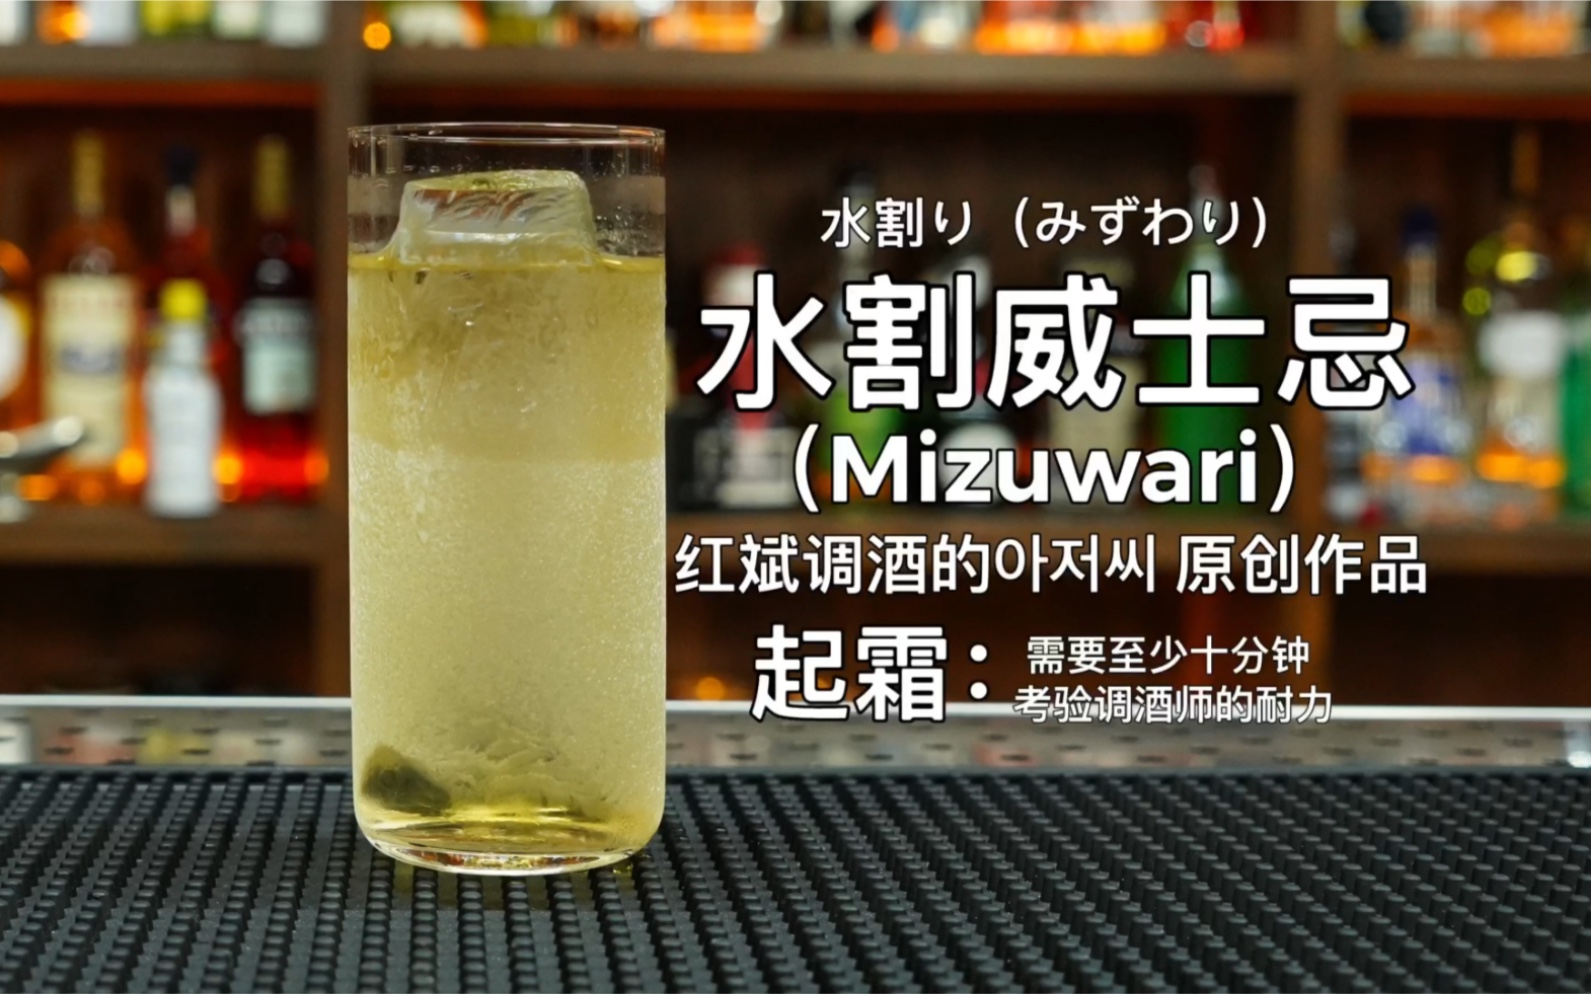 水割(Mizuwari)：是日本人发明的一种饮用威士忌的方法，目的是降低威士忌口感中辛辣，突出威士忌的芳香和甘甜。